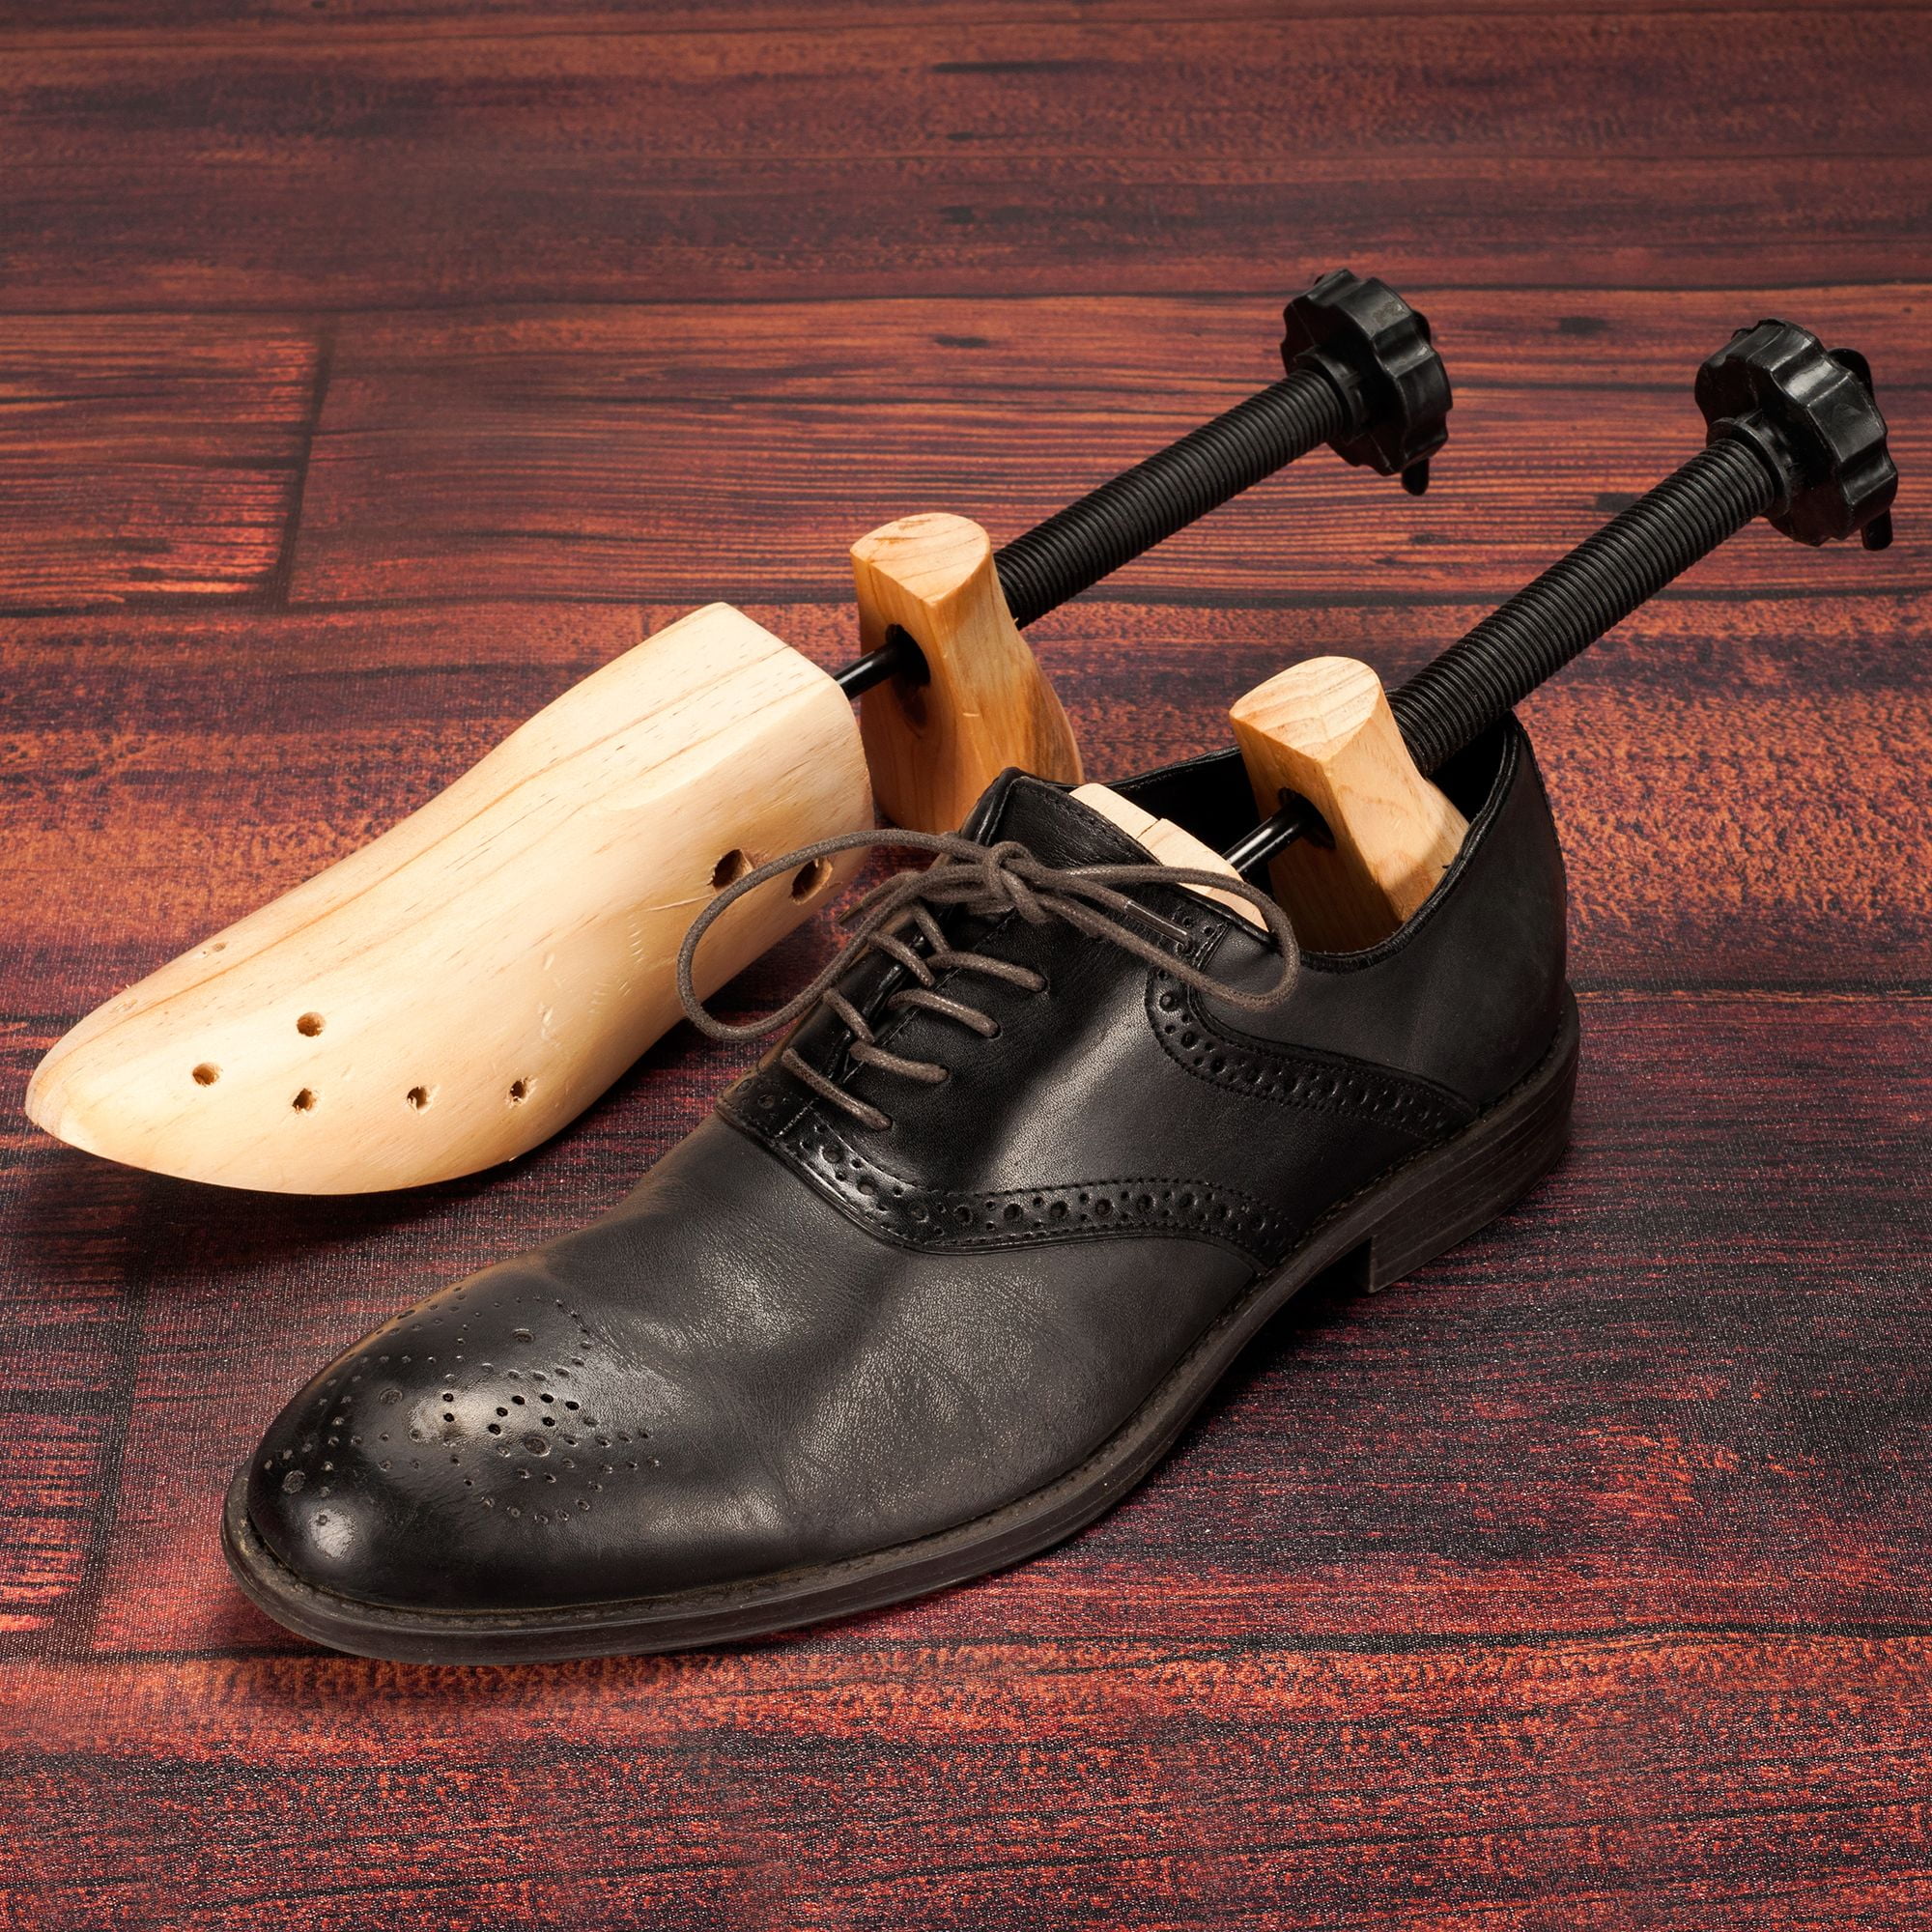 wooden shoe stretcher walmart